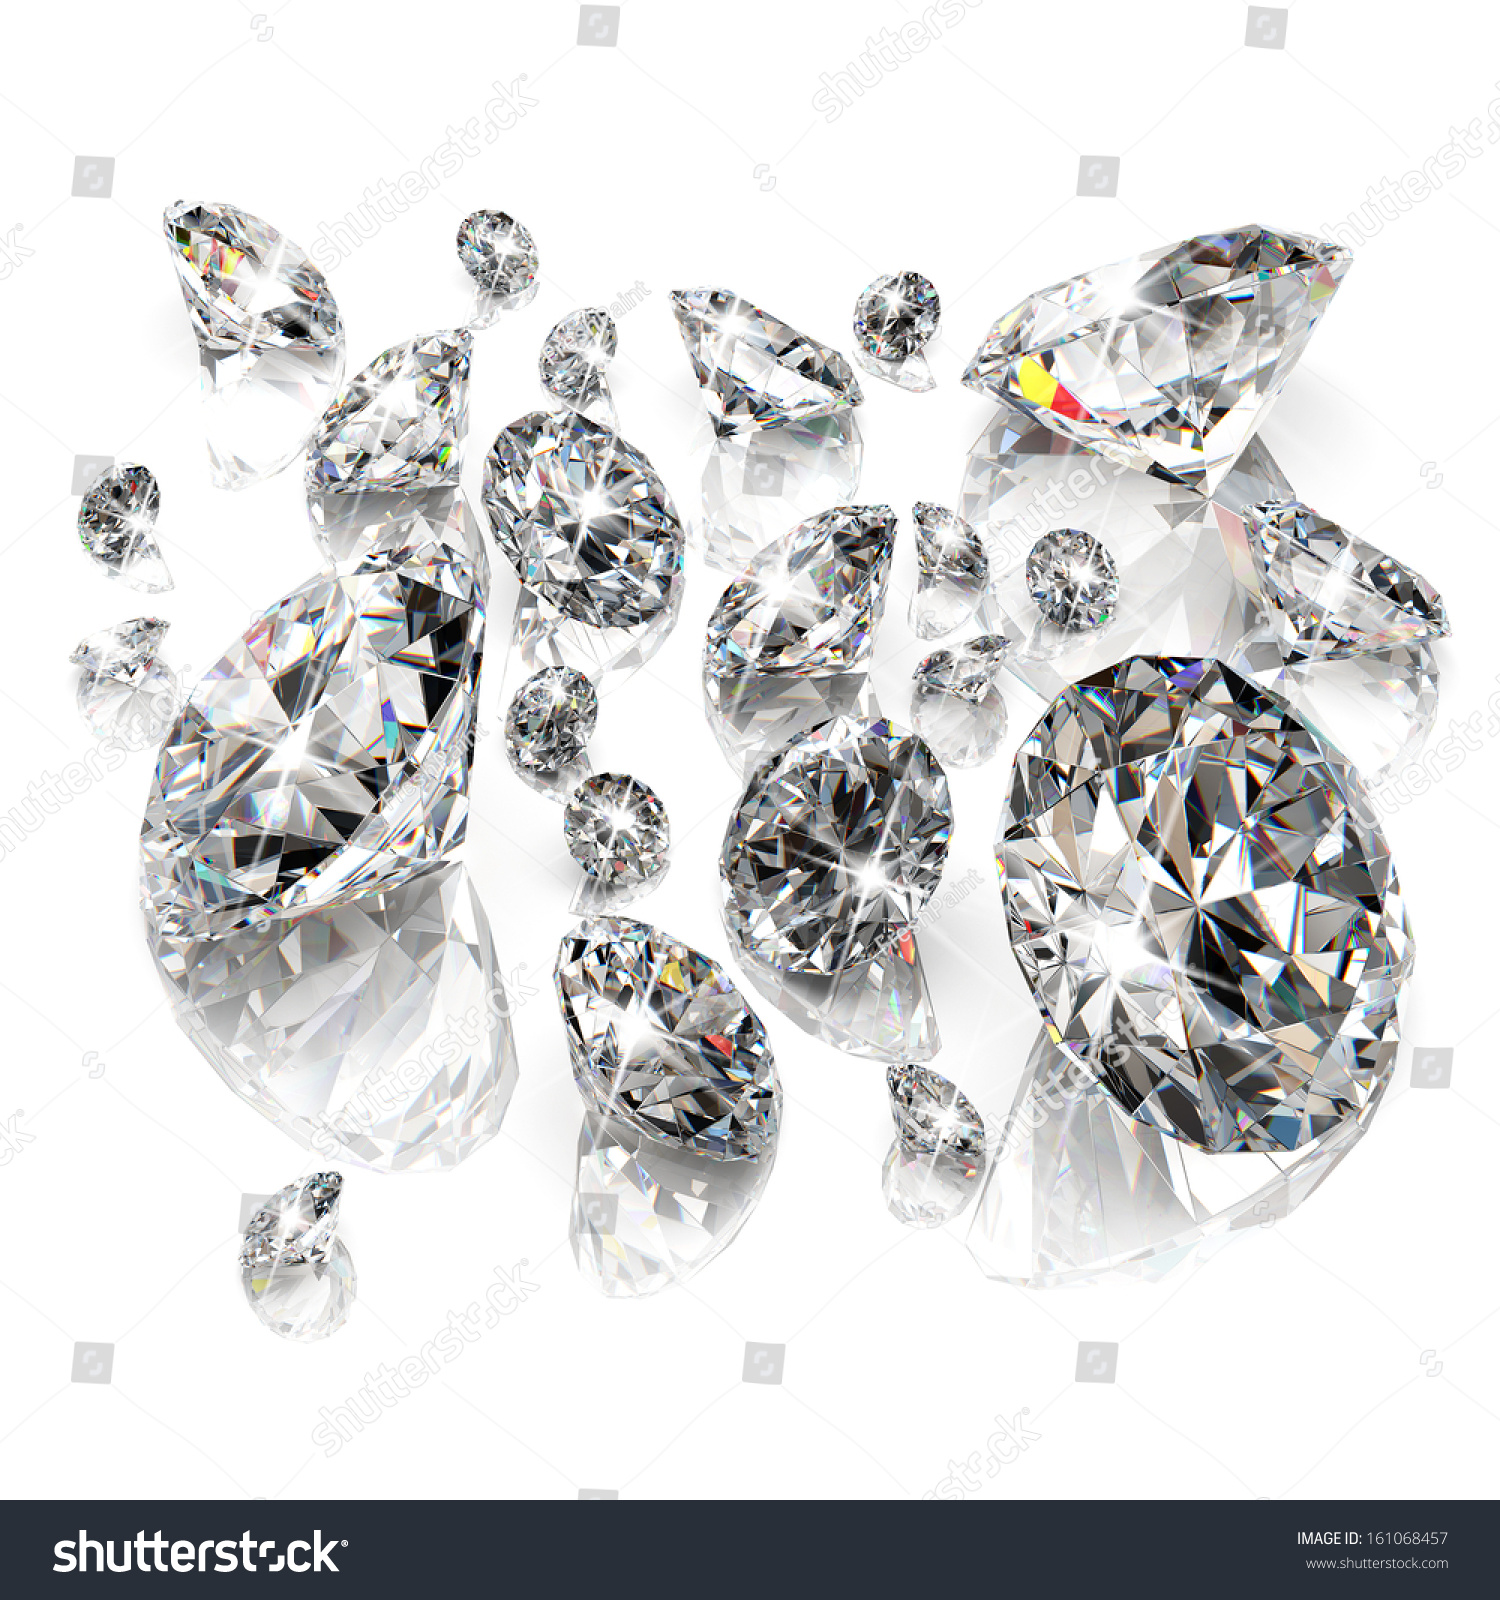 Brilliant diamonds isolated on white background #161068457